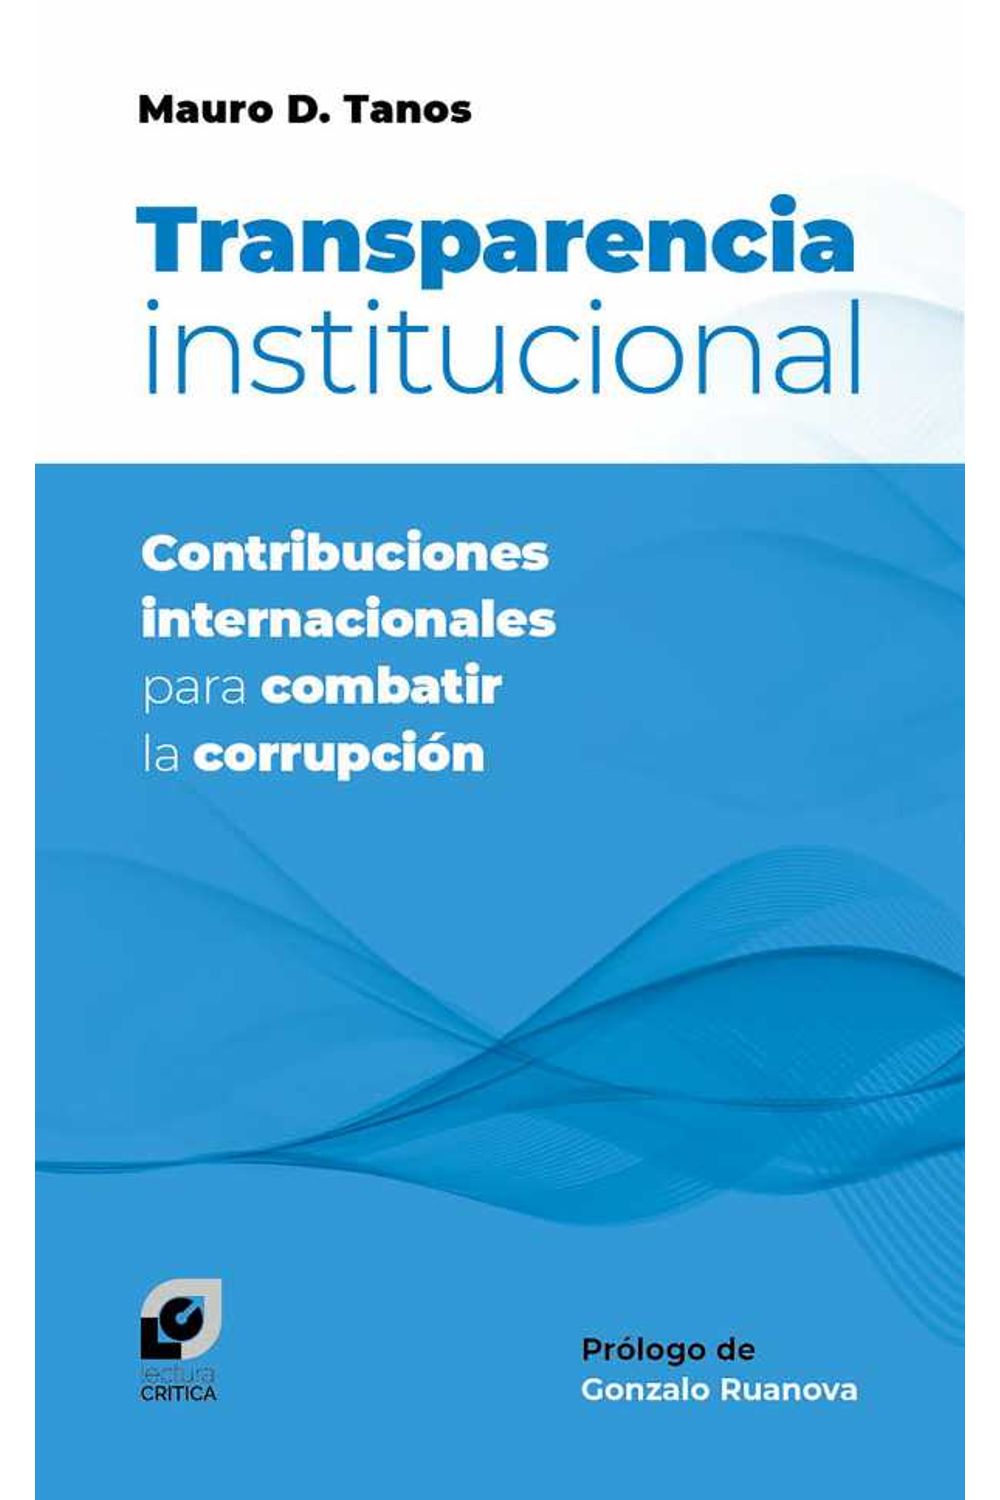 bw-transparencia-institucional-editorial-punto-de-encuentro-9789874756268